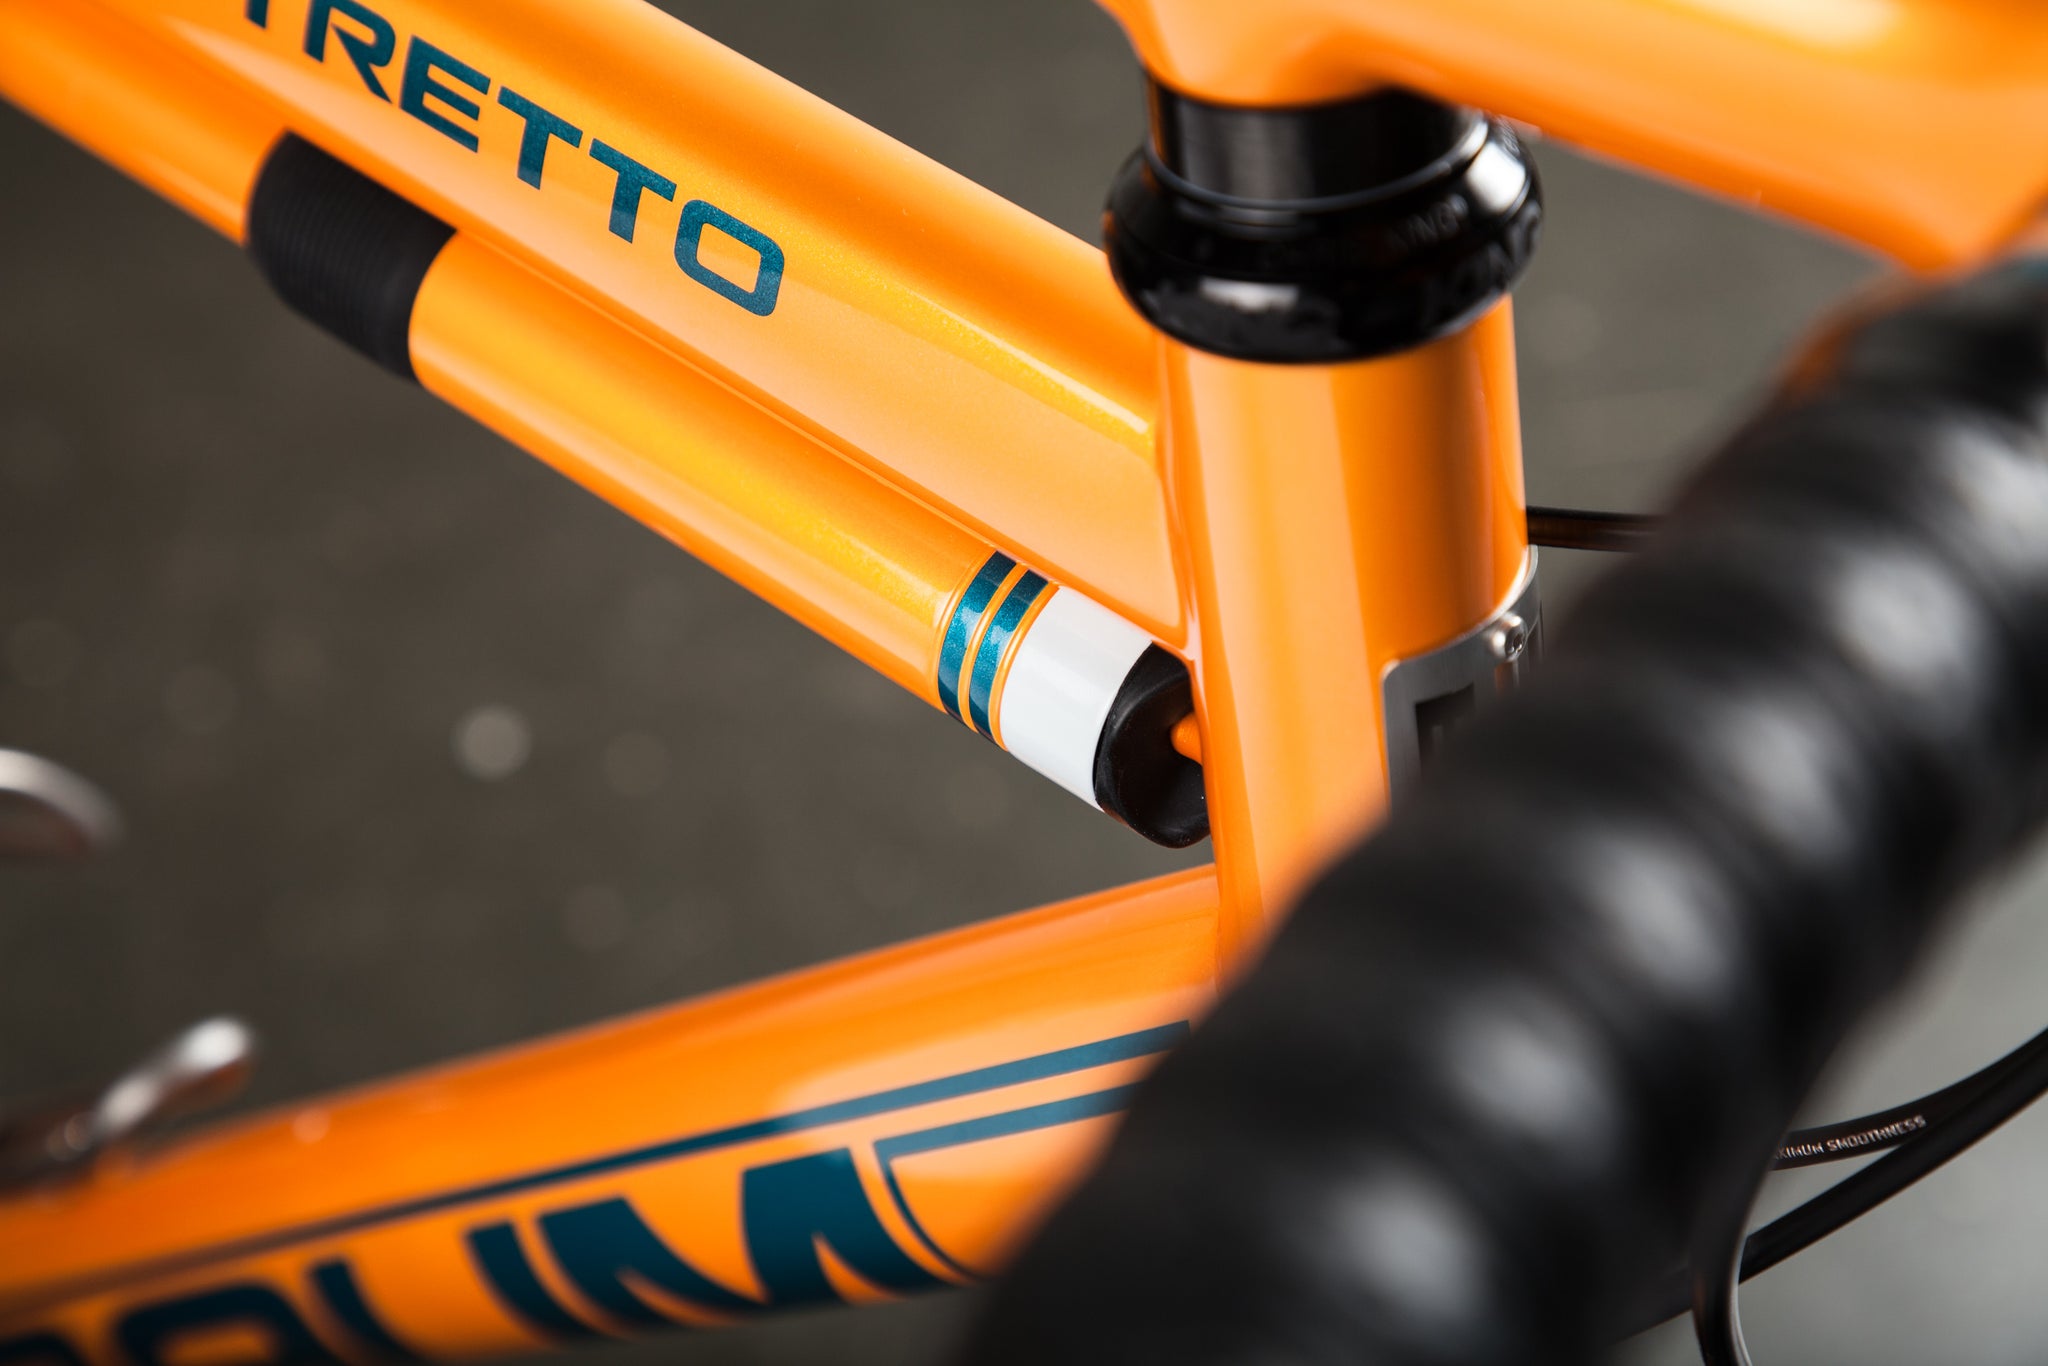 Bike of the Week: An Orange Steel Sprinter